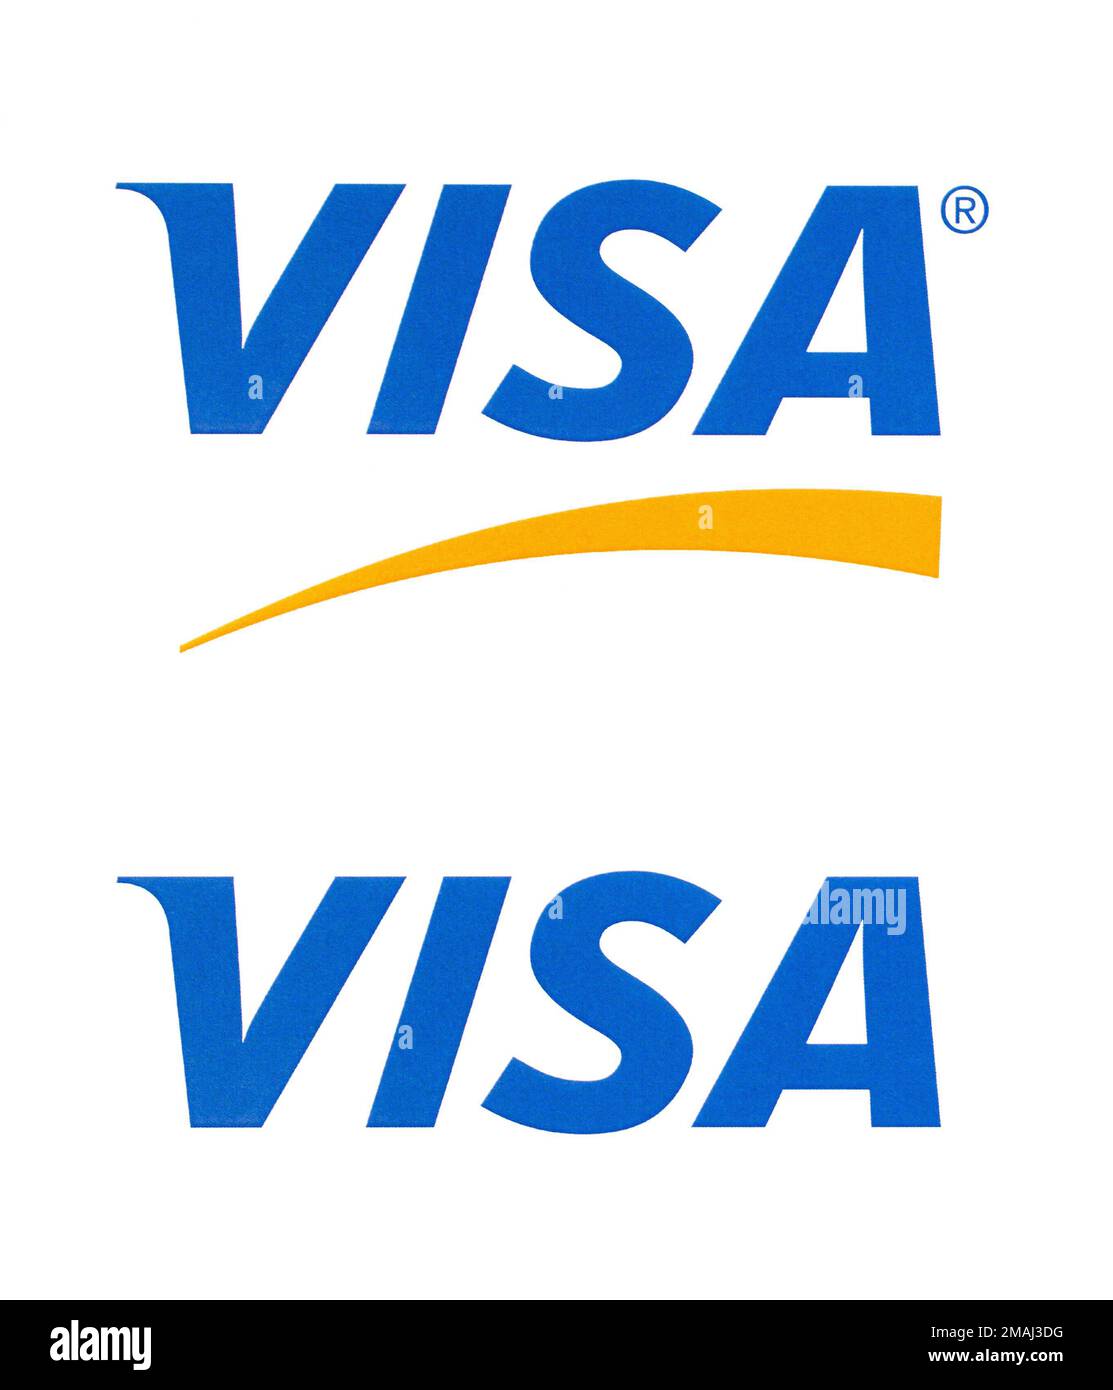 Chisinau, Moldawien - 19. September 2018: Visa-Logo auf dem Papier und auf weißem Hintergrund gedruckt.Visa - amerikanisches multinationales Unternehmen, das das Programm bereitstellt Stockfoto